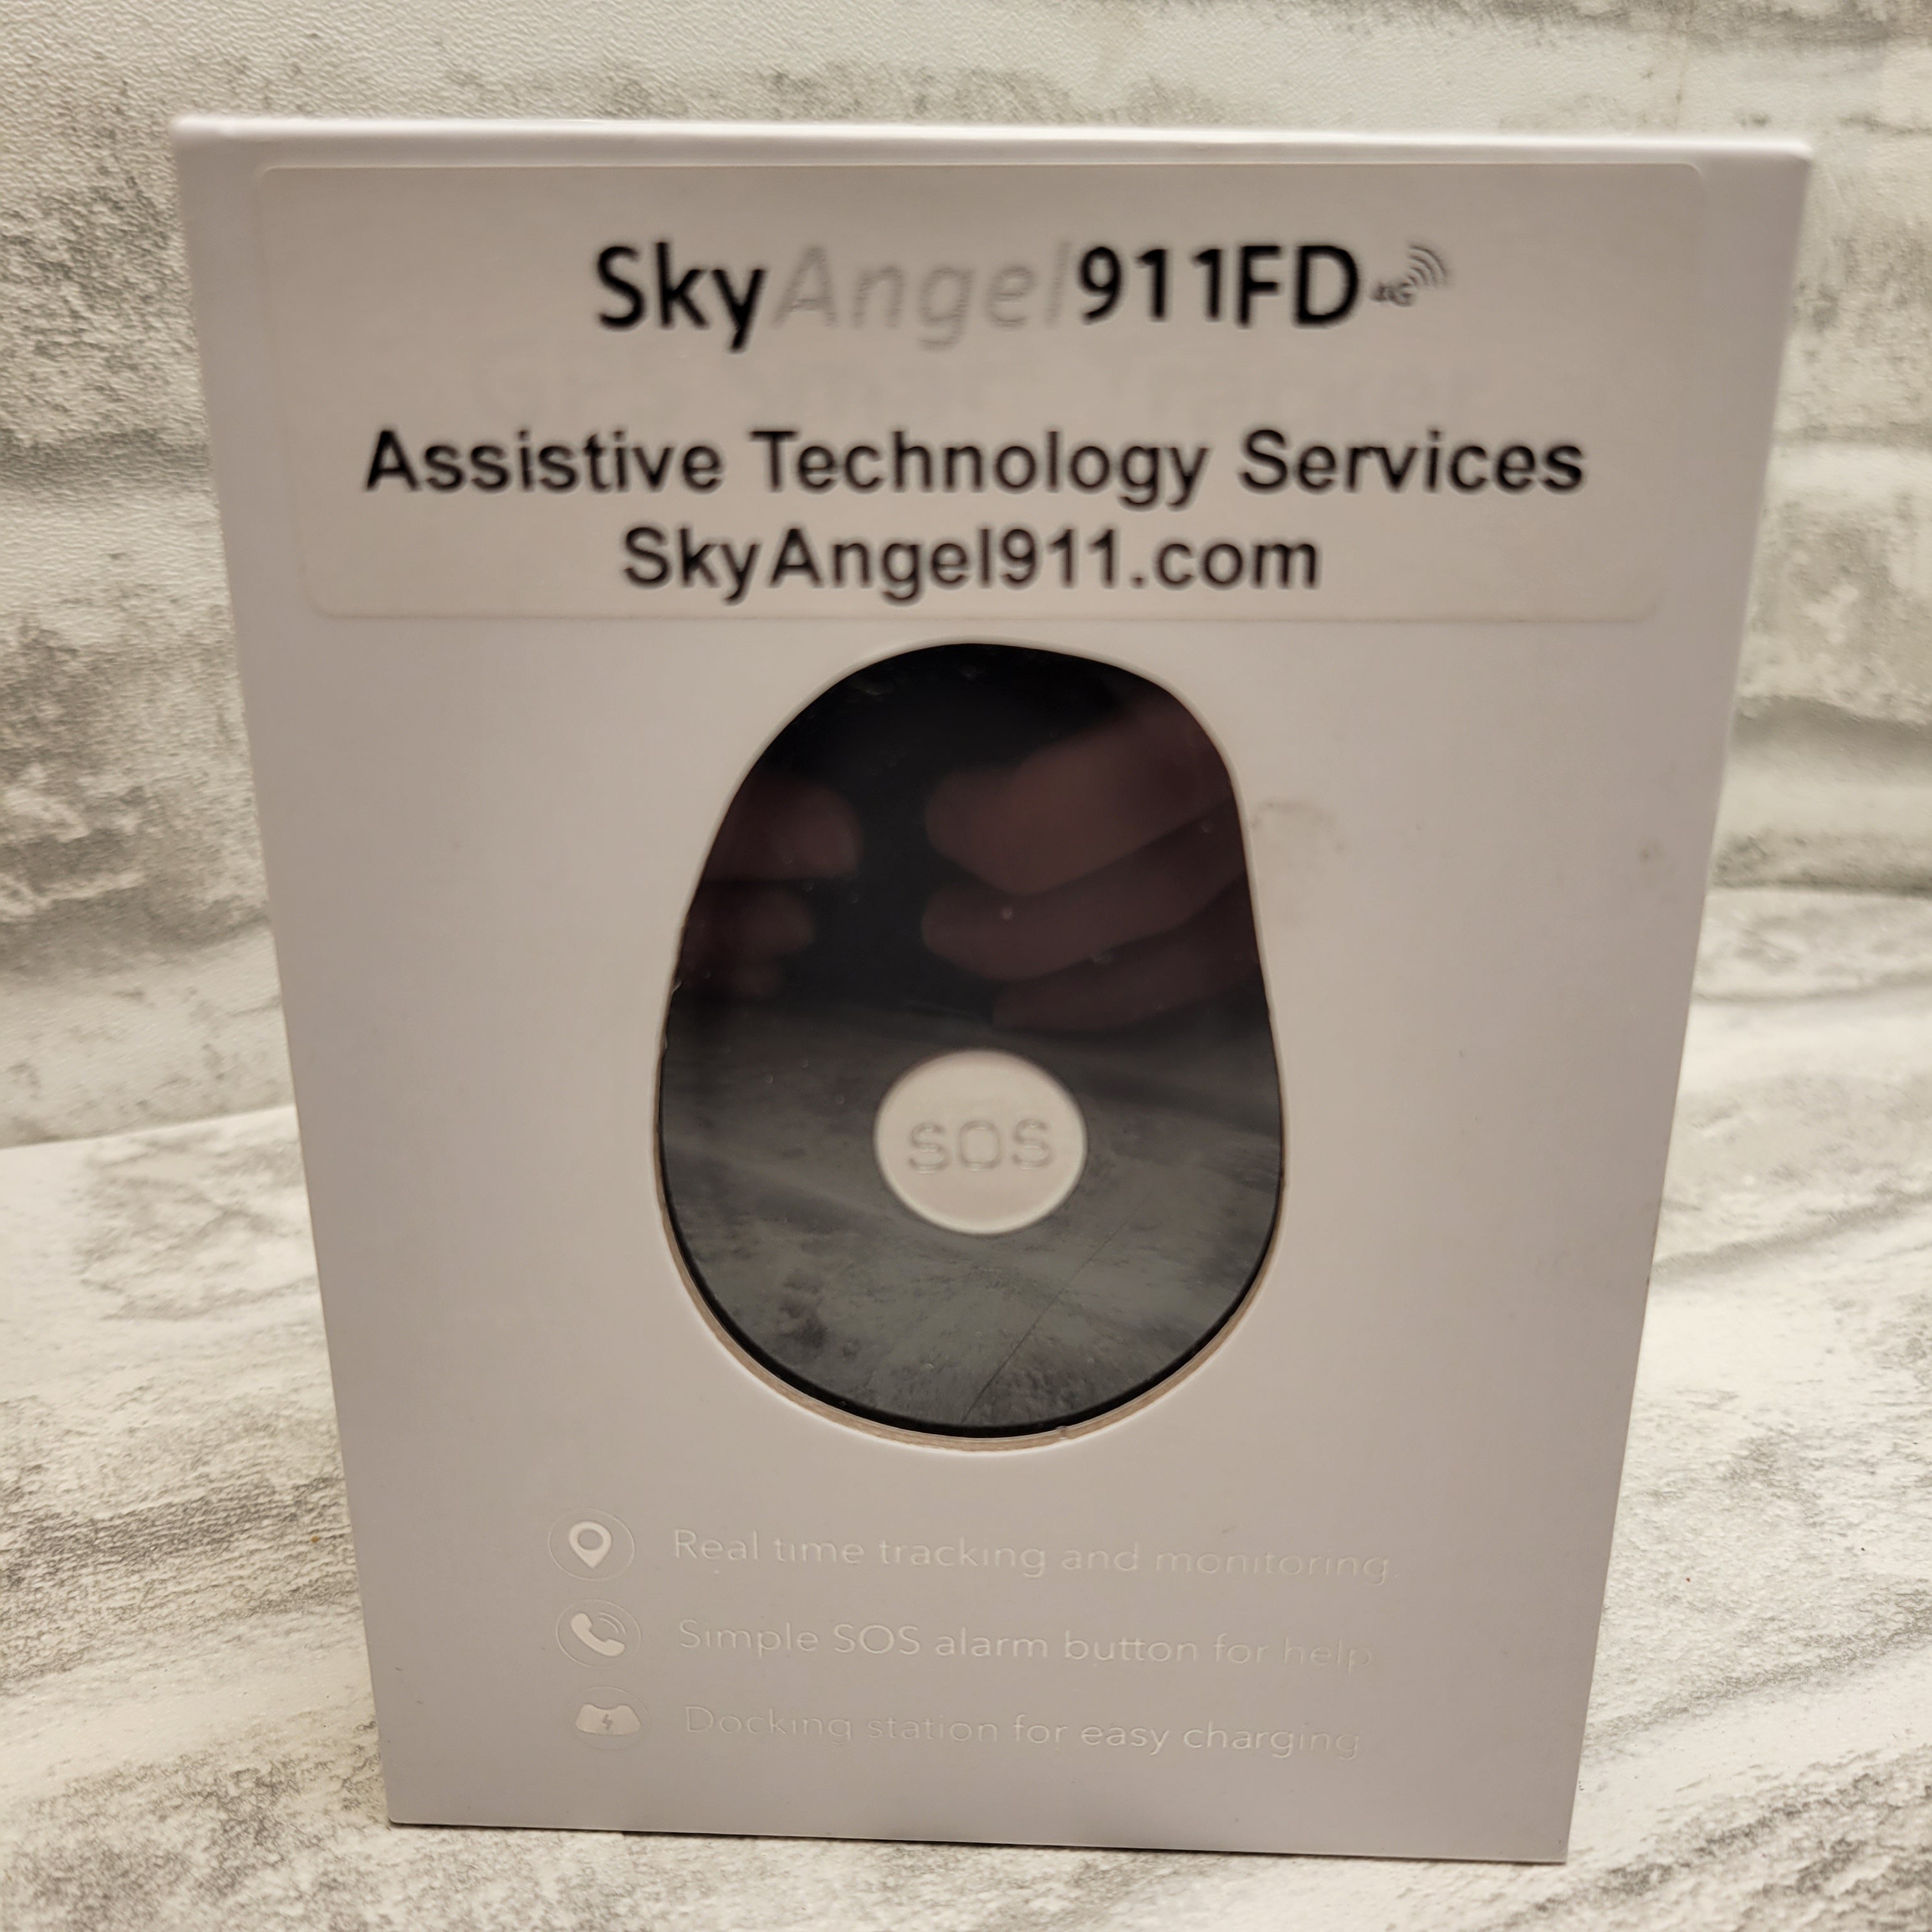 SkyAngel911FD Device/Fob/Alarm (7537948557550)